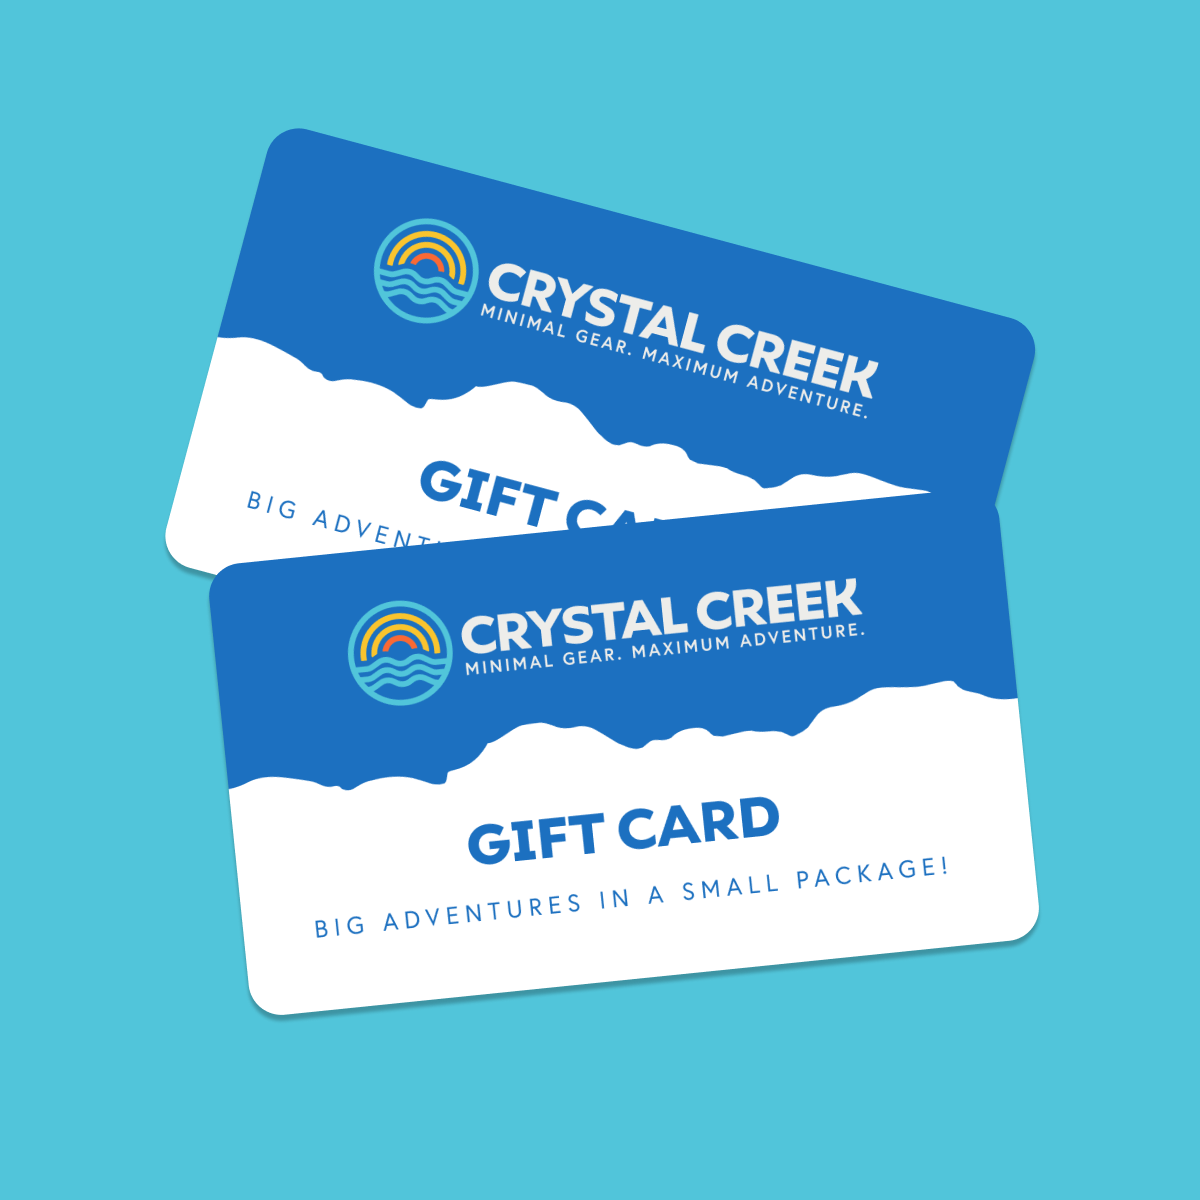 Crystal Creek Gift Card – Crystal Creek Gear